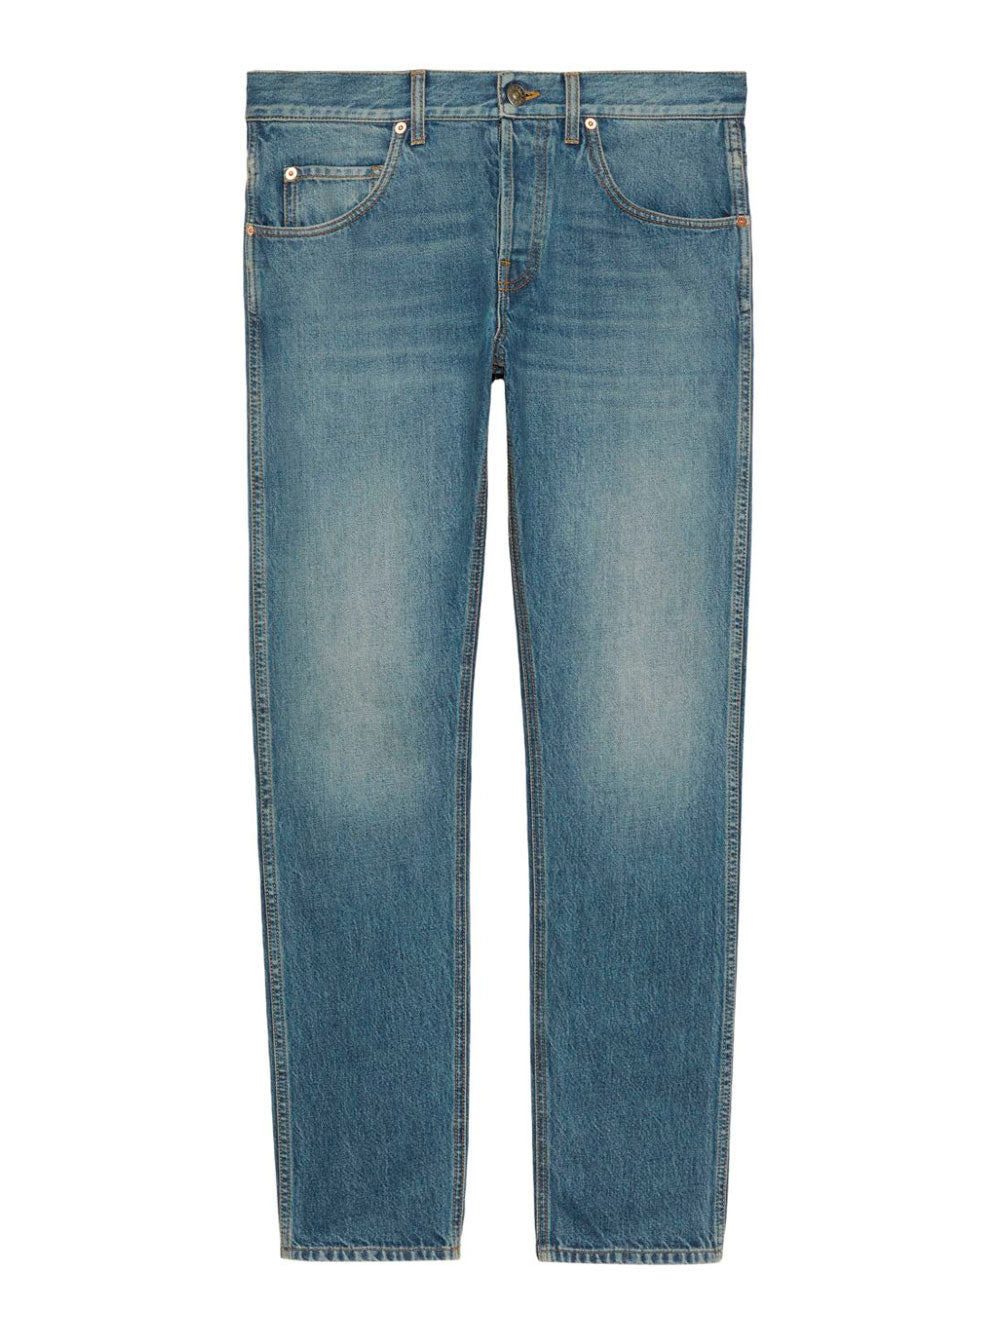 Stonewashed jeans